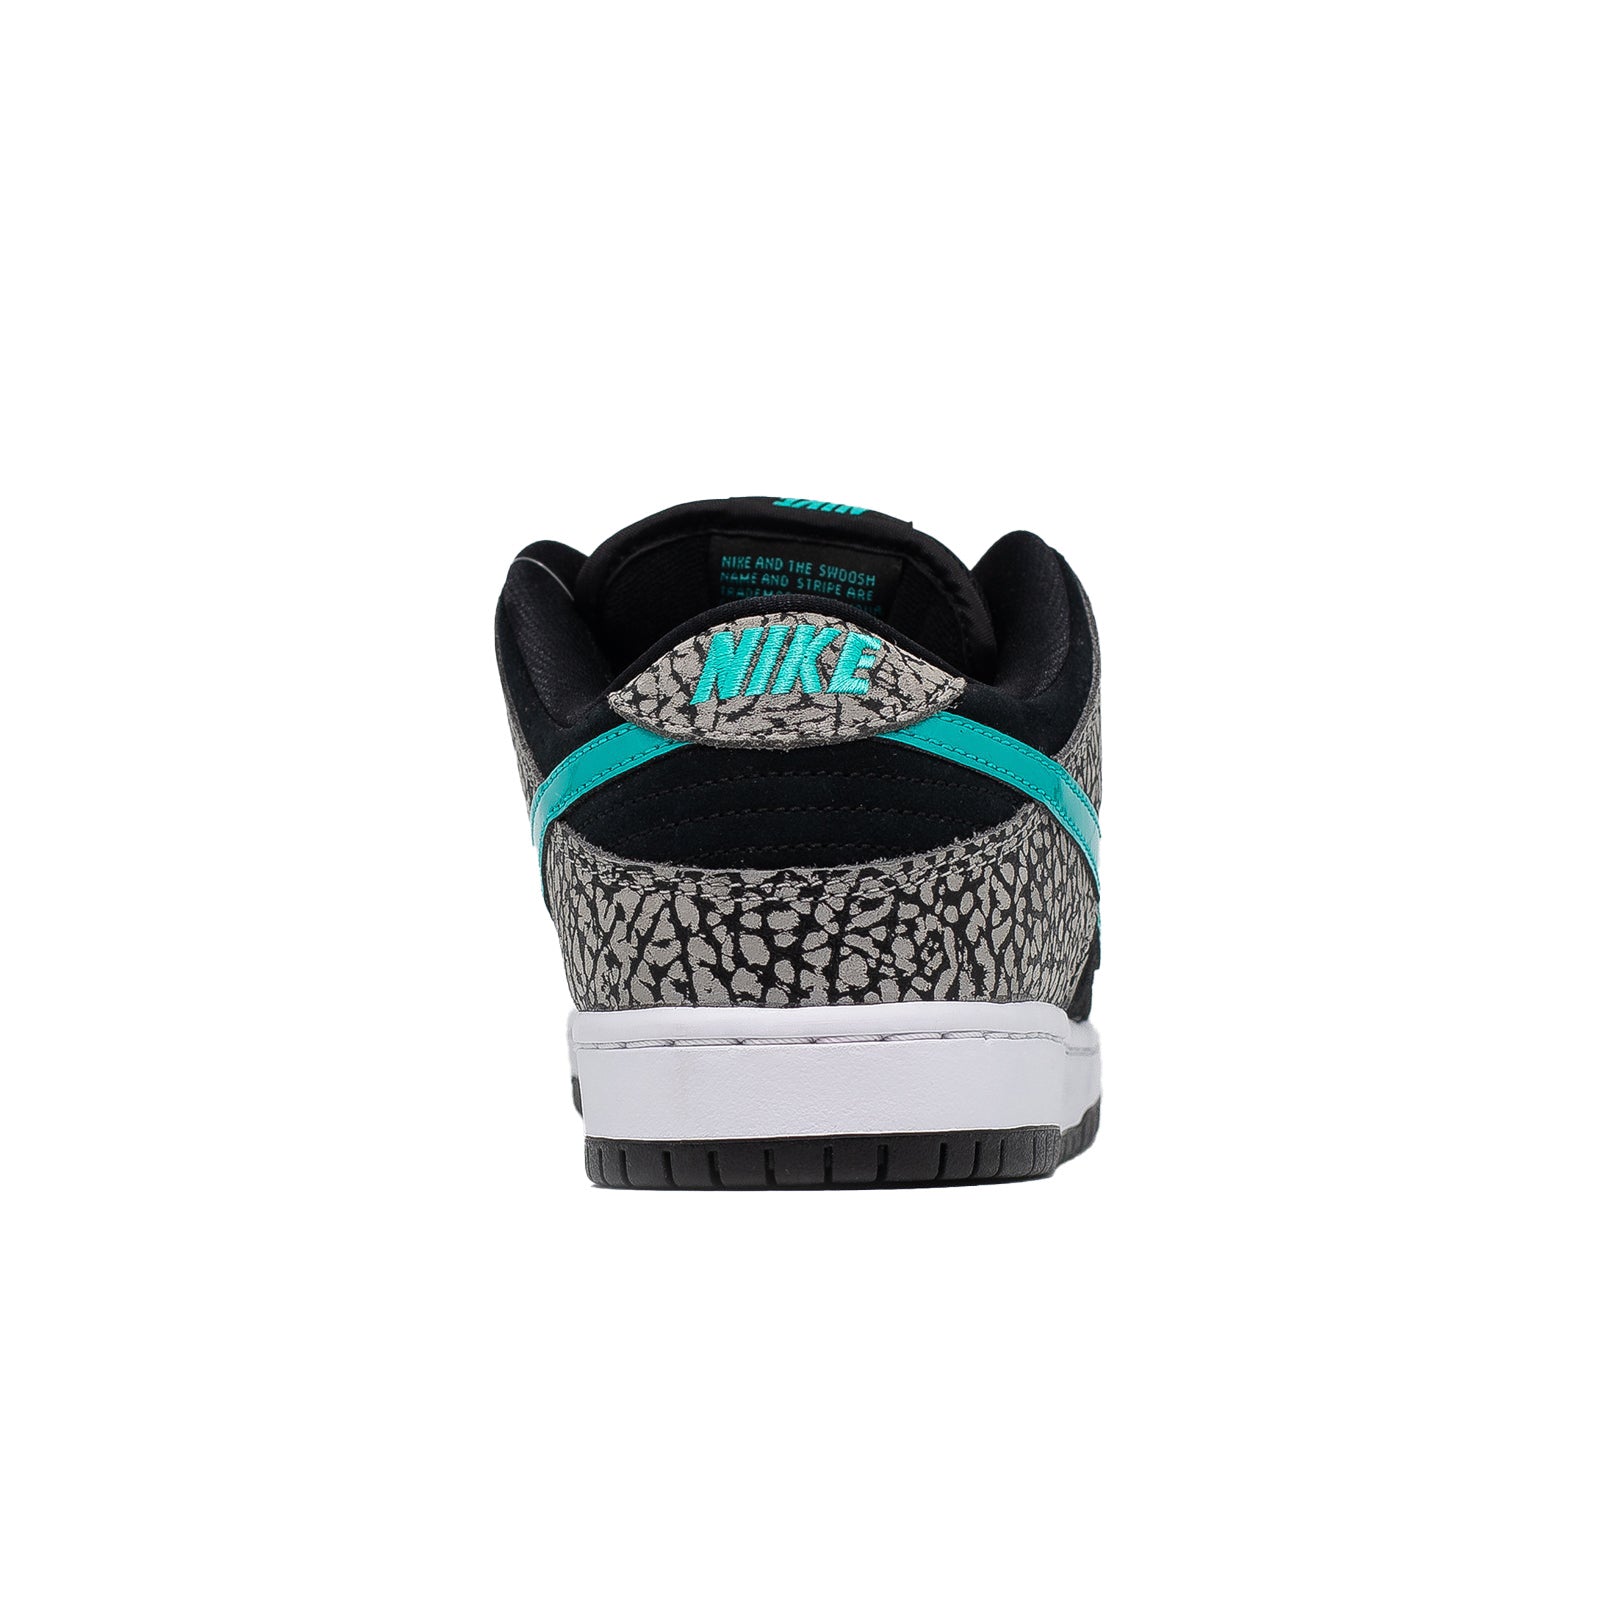 Nike SB Dunk Low Elephant Release Date BQ6817-009